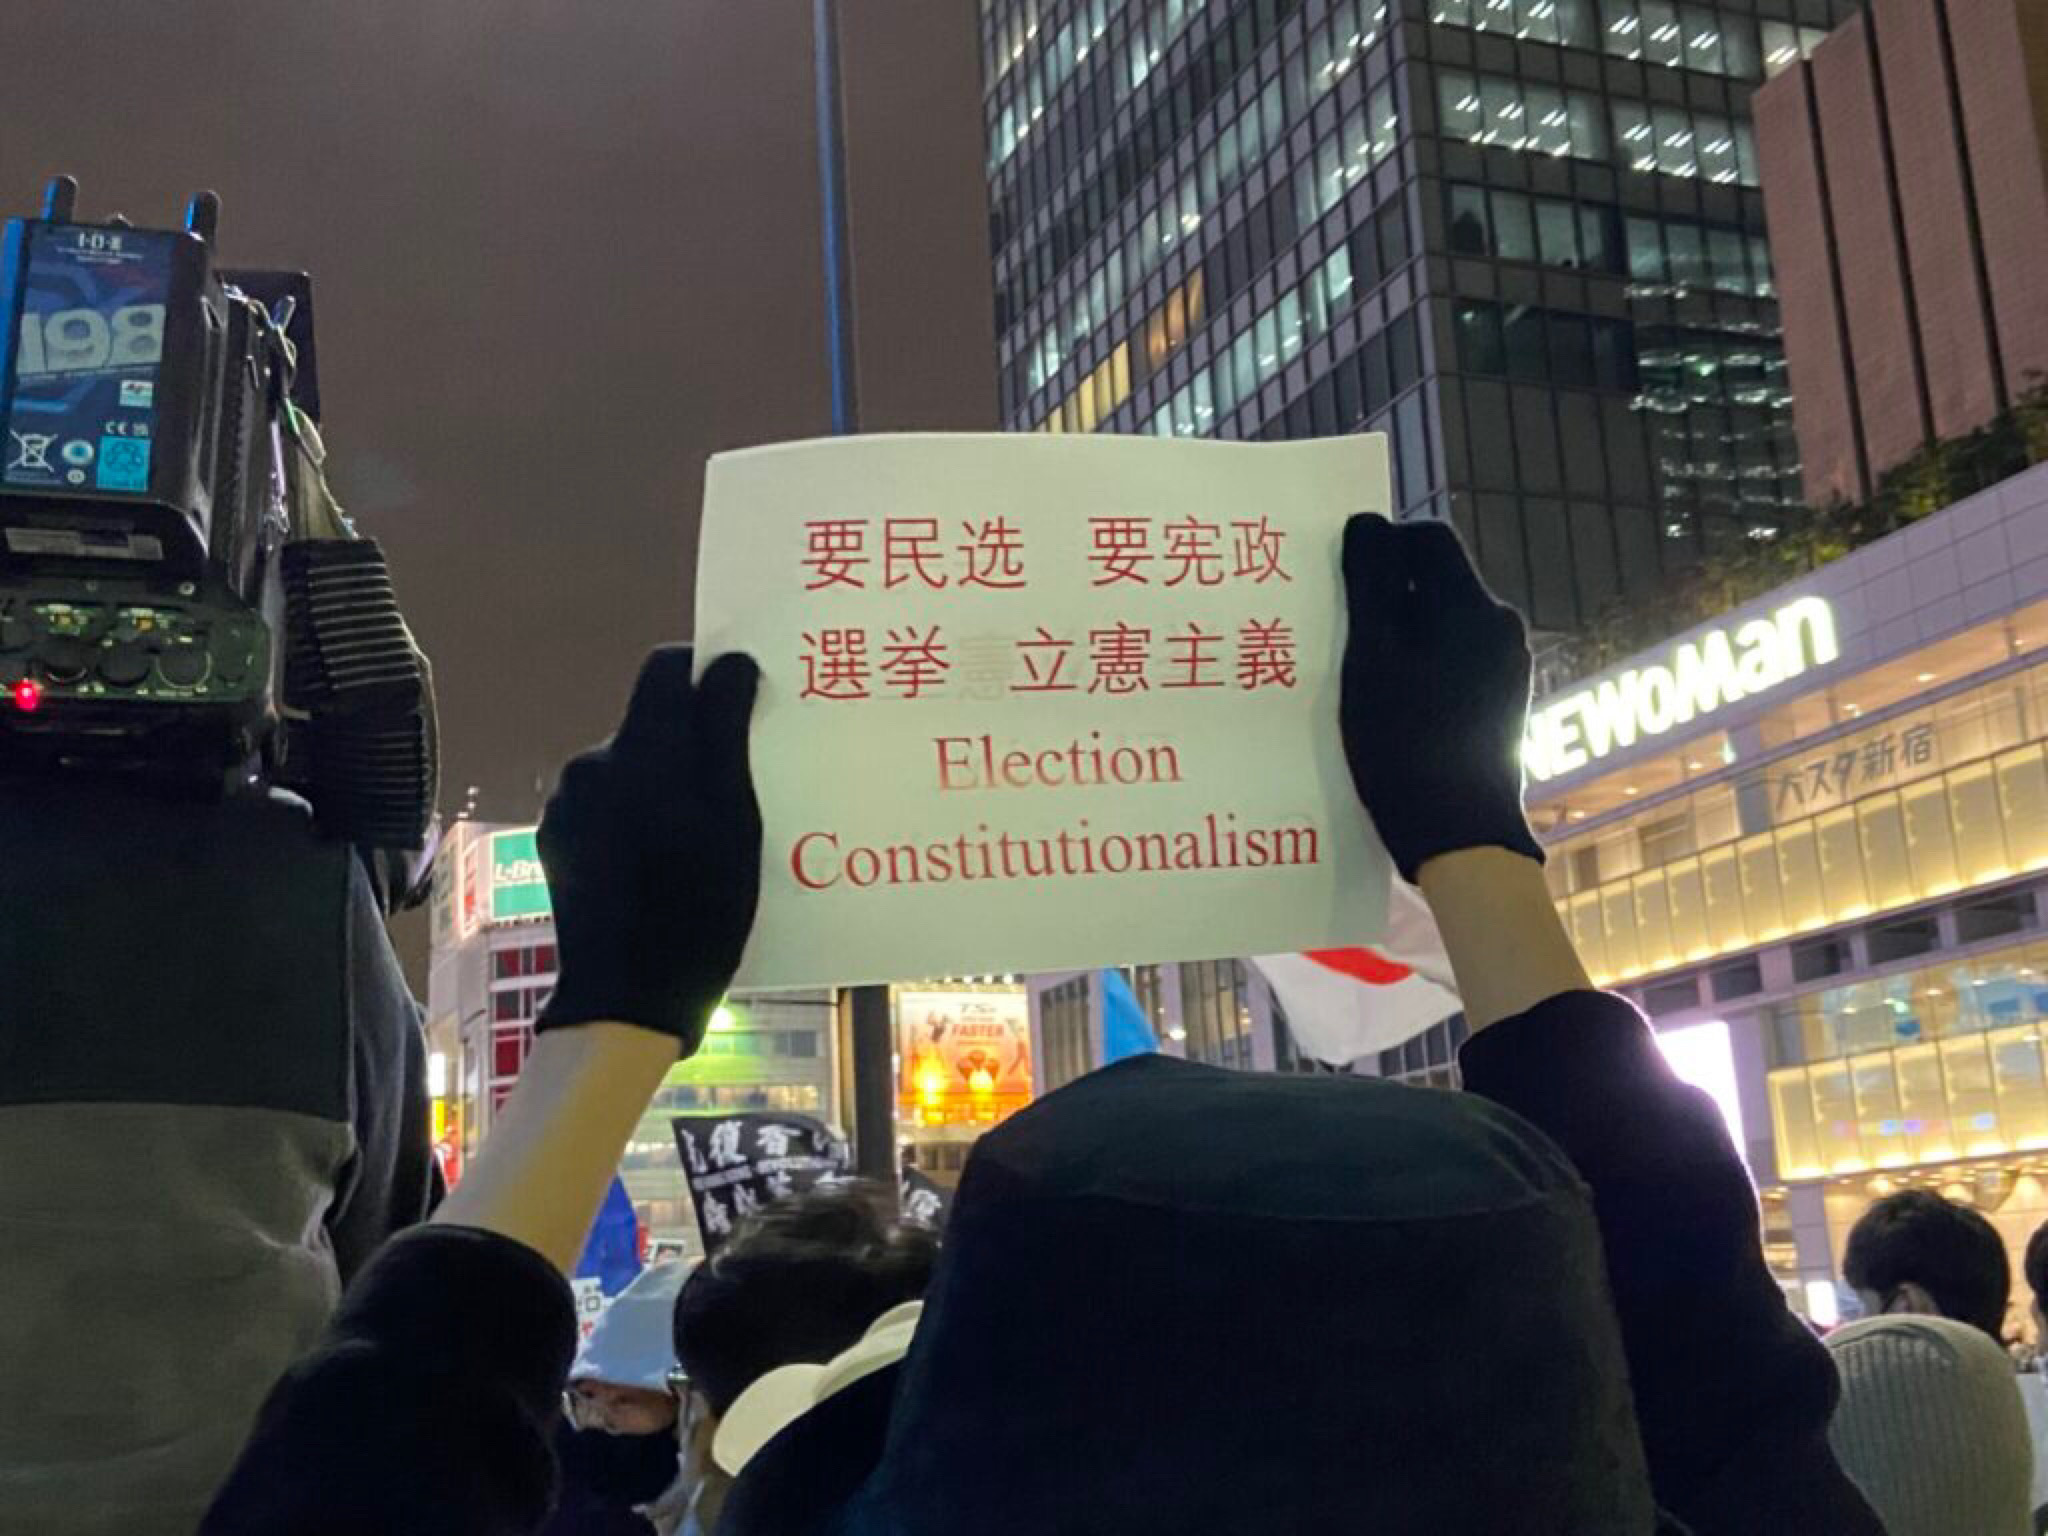 Người biểu tình ở Nhật Bản giương cao biểu ngữ đòi bầu cử công bằng và chính phủ hợp hiến ở Trung Quốc. (Ảnh: The Epoch Times)